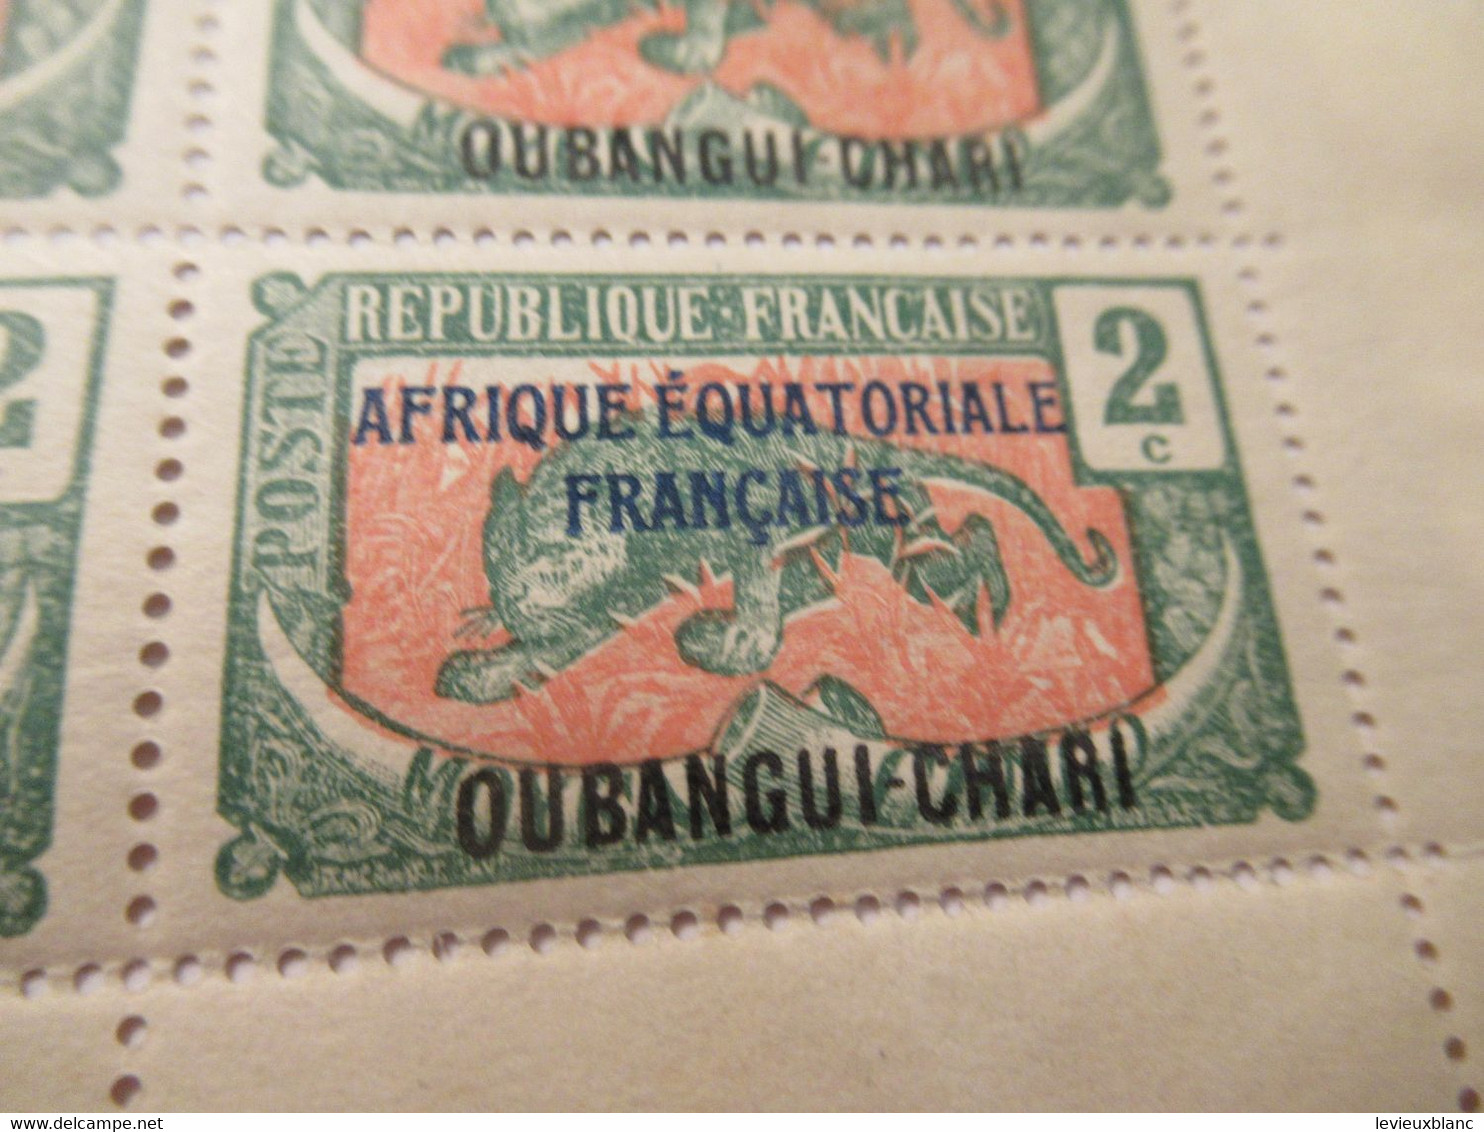 Plaque Complète De 25 Timbres 2C Anciens/Moyen Congo 1907 Surchargés AEF/Oubangui Chari1/Panthère/1924-25     TIMB155 - Africa (Varia)